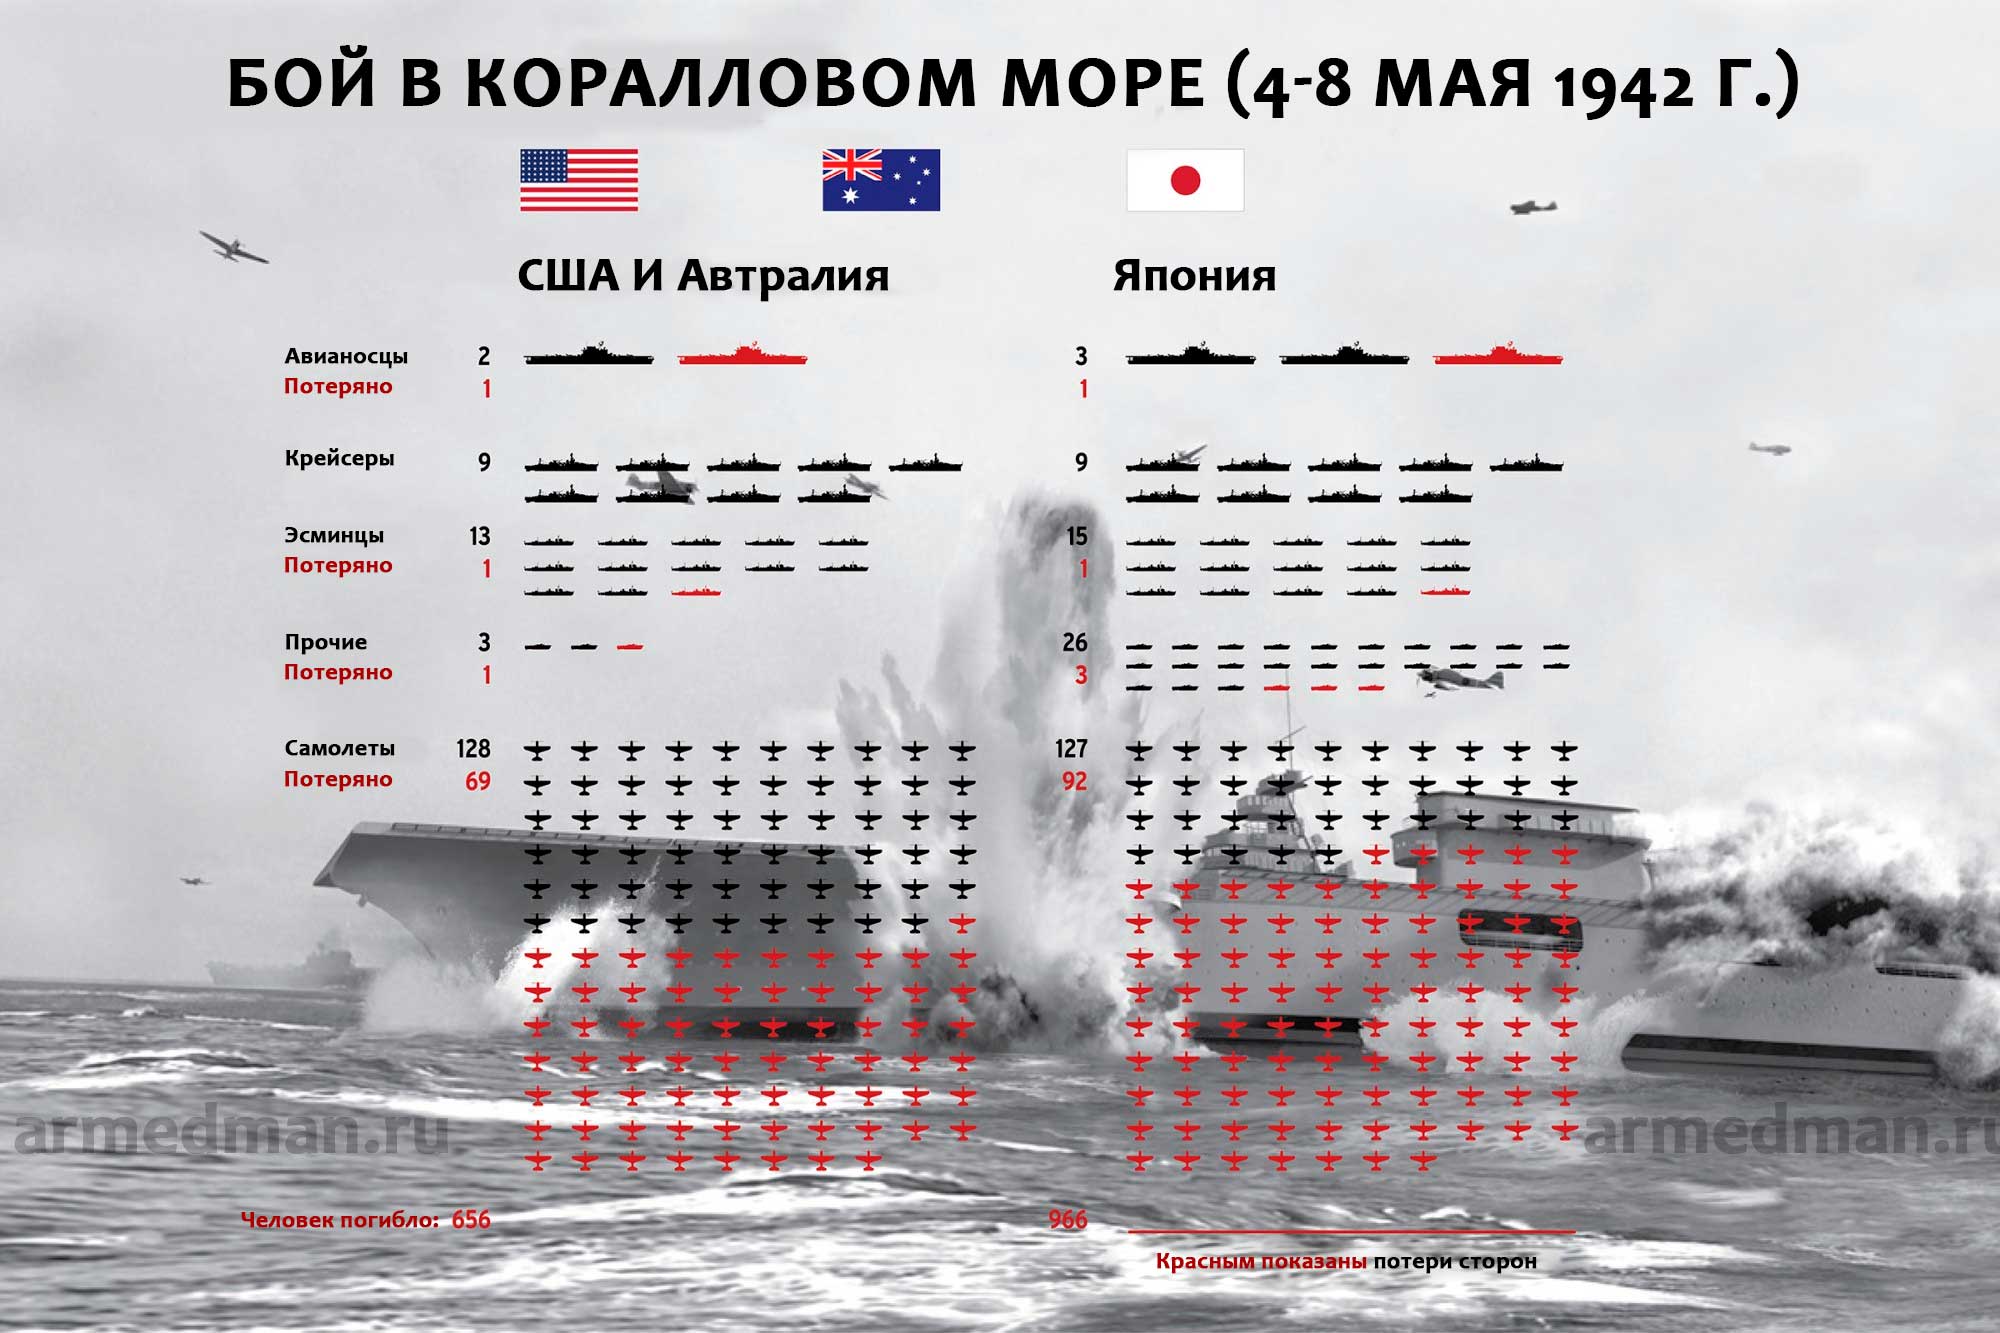 Инфографика с результатами боя в Коралловом море (4-8 мая 1942 г.)